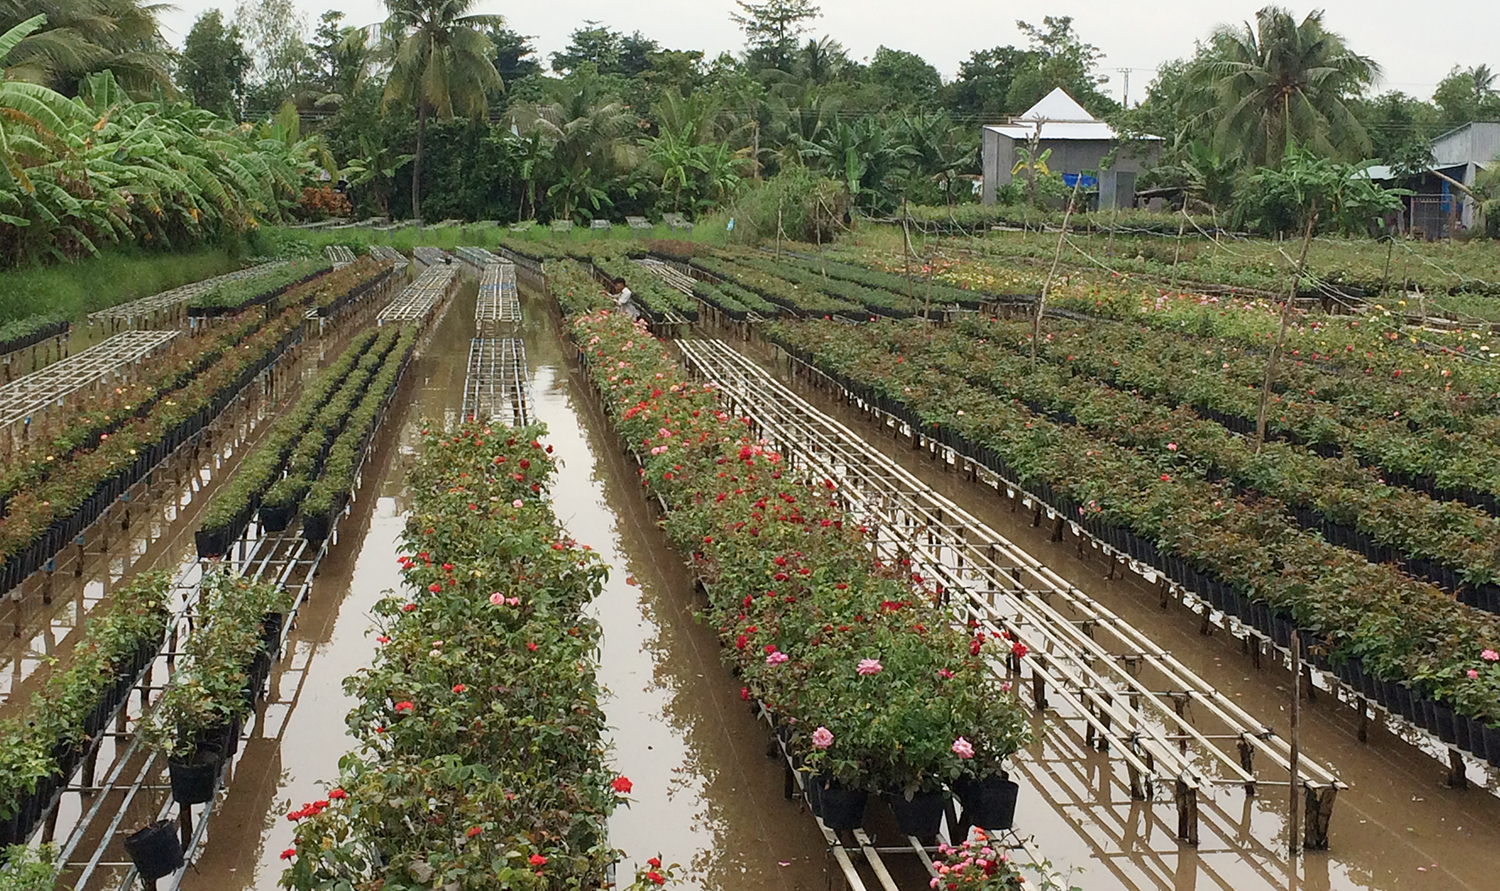 Hiện toàn TP Sa Đéc có trên 510 ha trồng hoa kiểng với trên 2.300 hộ sản xuất, tập trung nhiều nhất ở phường Tân Quy Đông và xã Tân Khánh Đông.